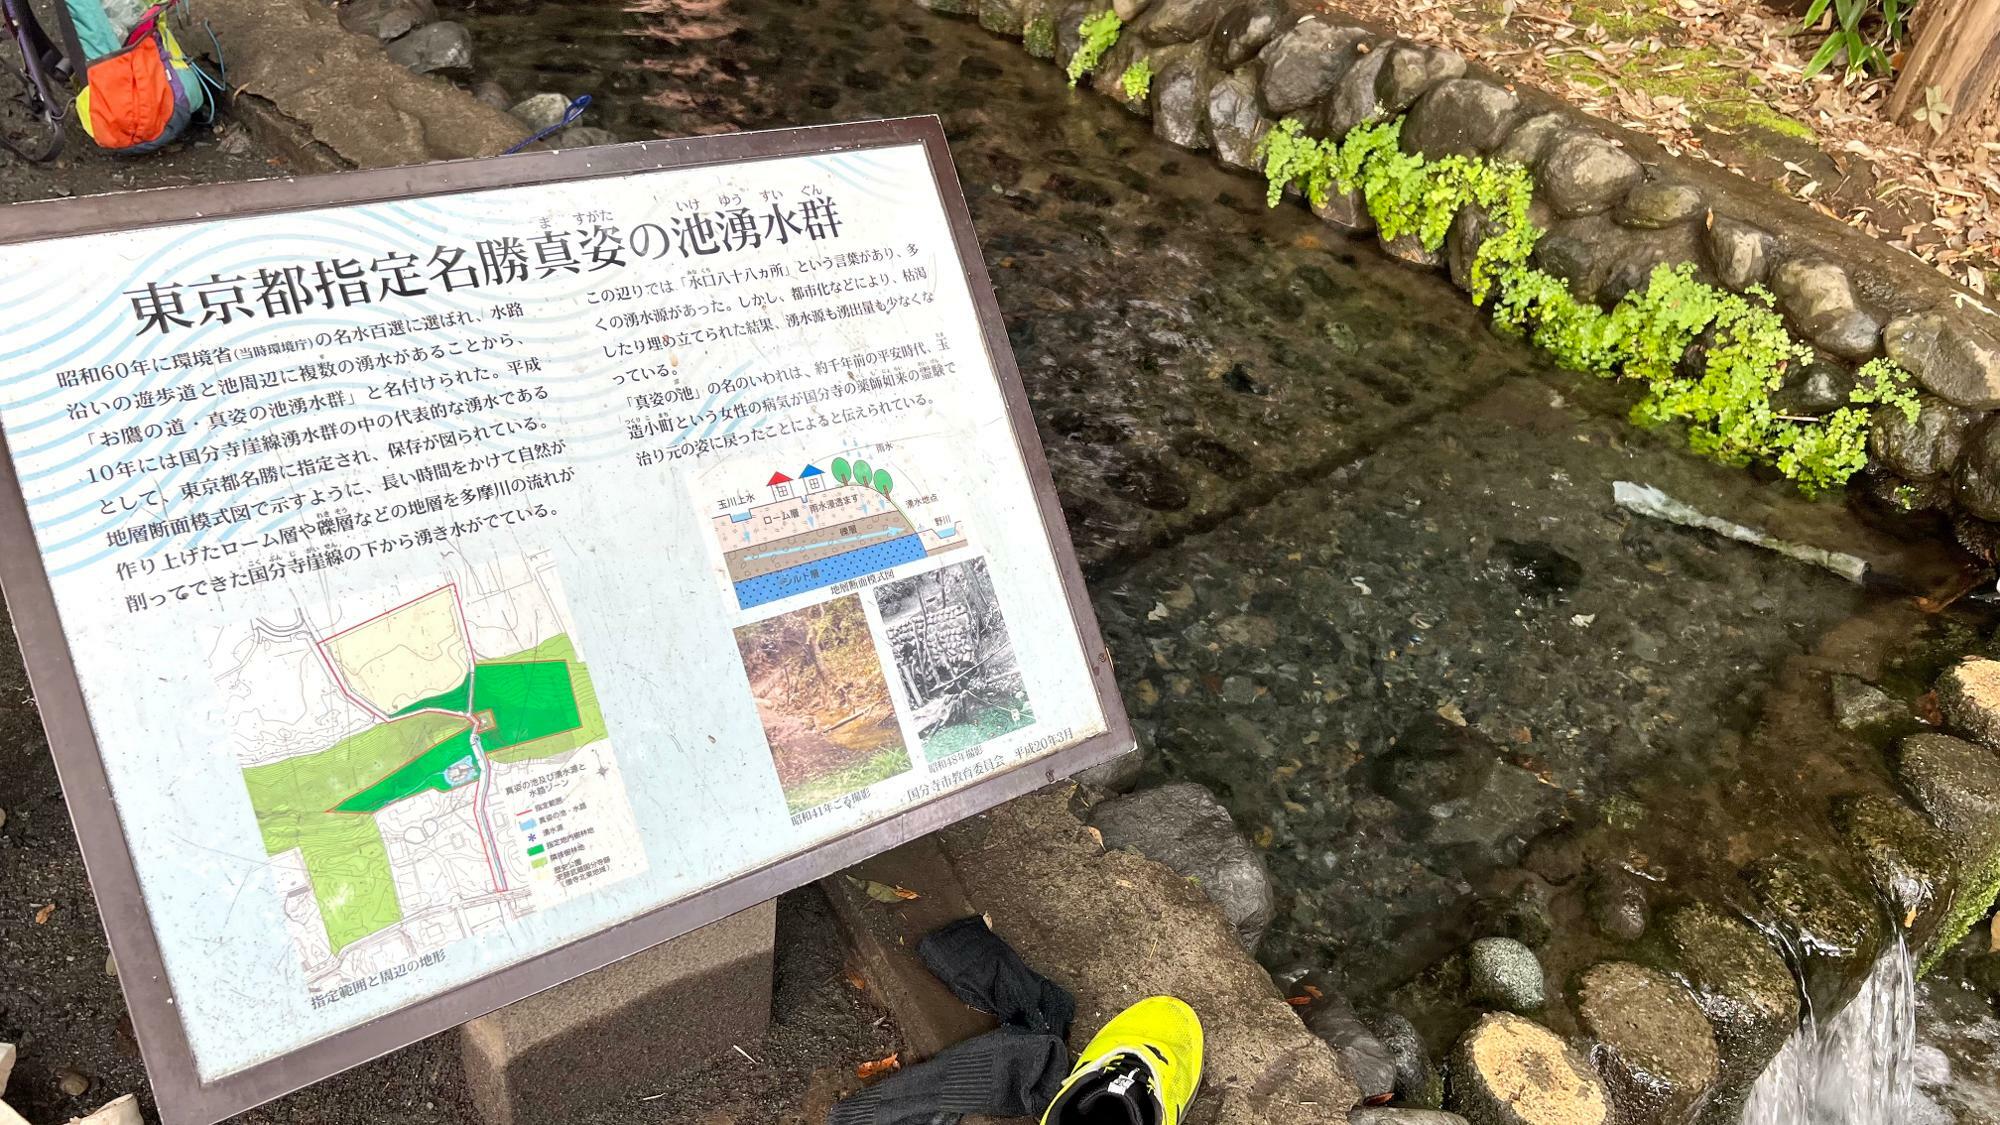 東京都指定名勝「真姿の池湧水群」